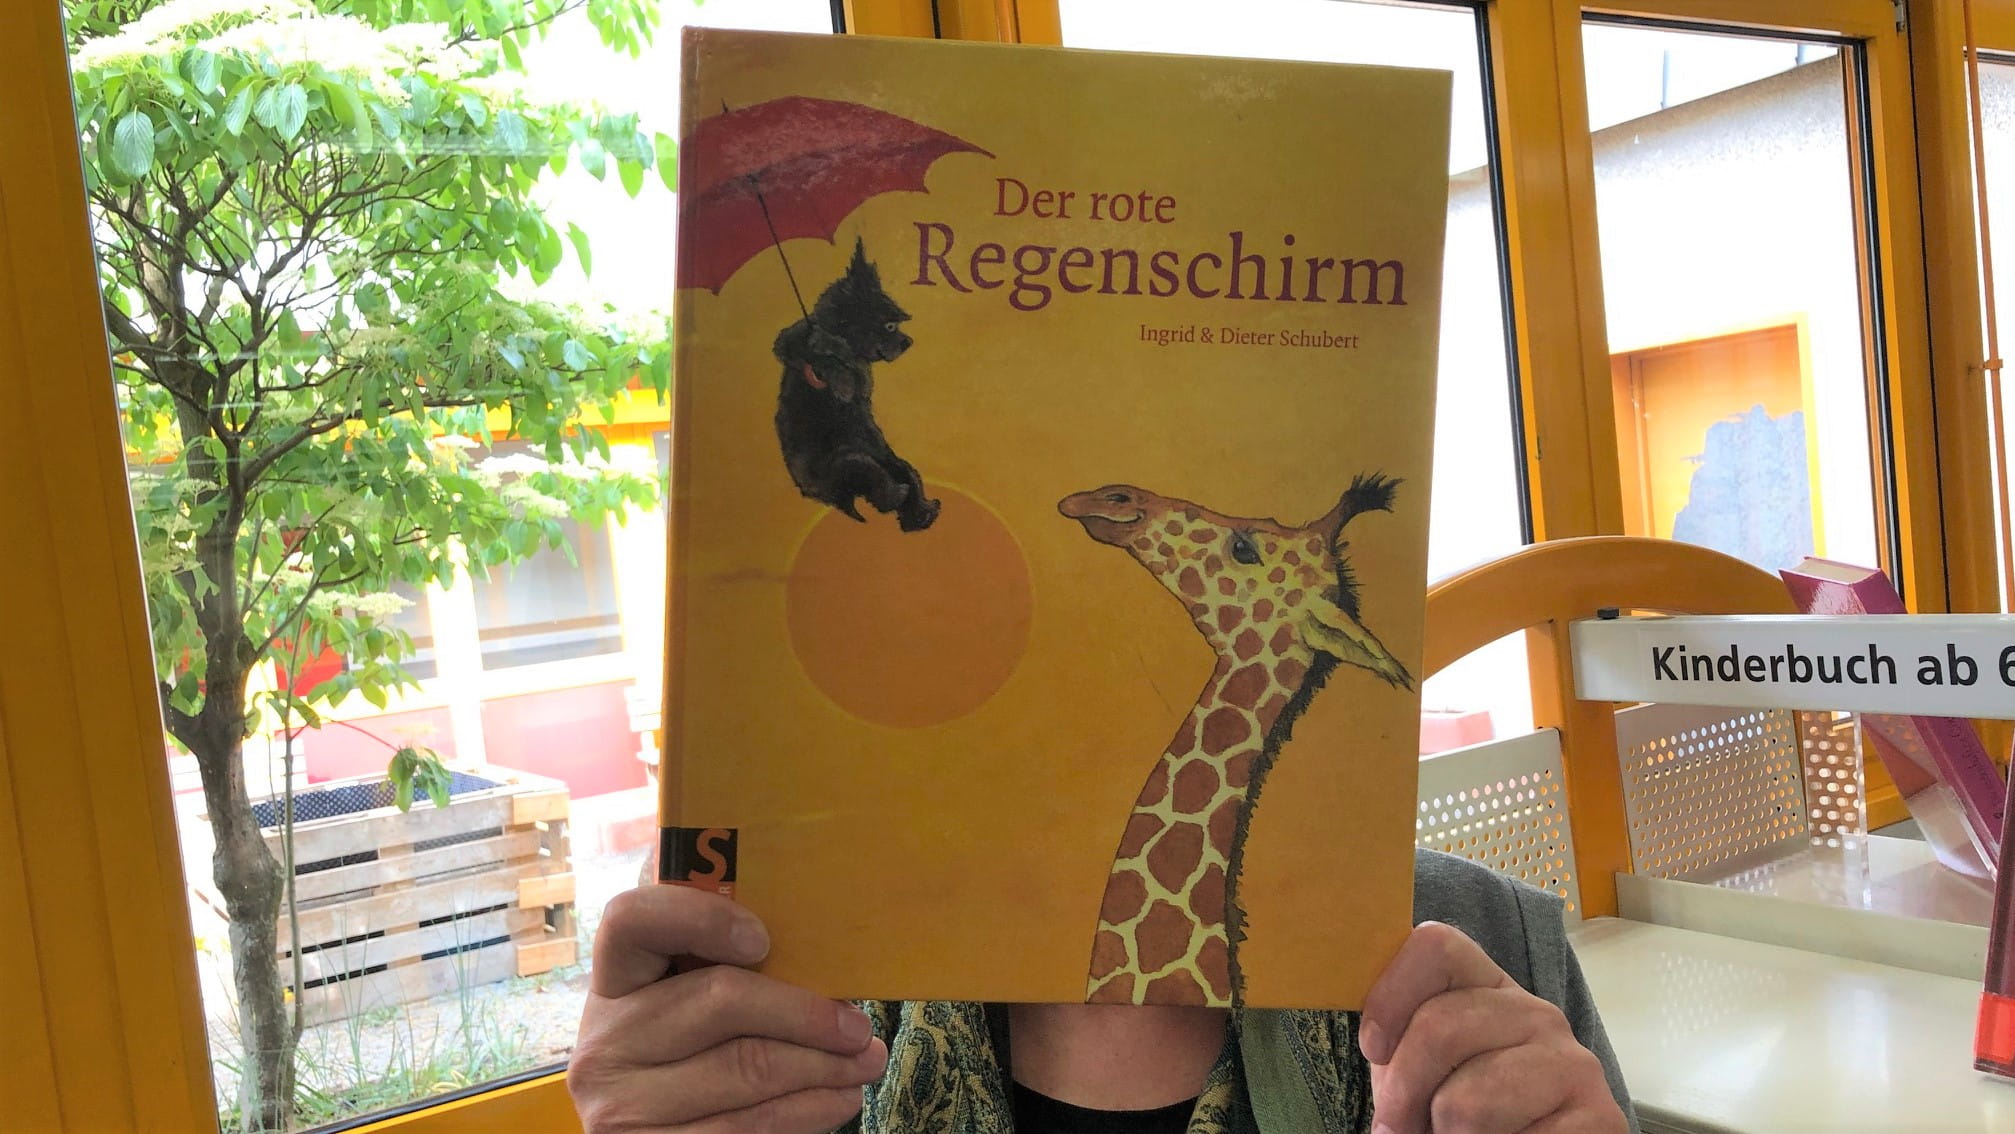 Buchcover "Der rote Regenschirm" von Dieter und Ingrid Schubert